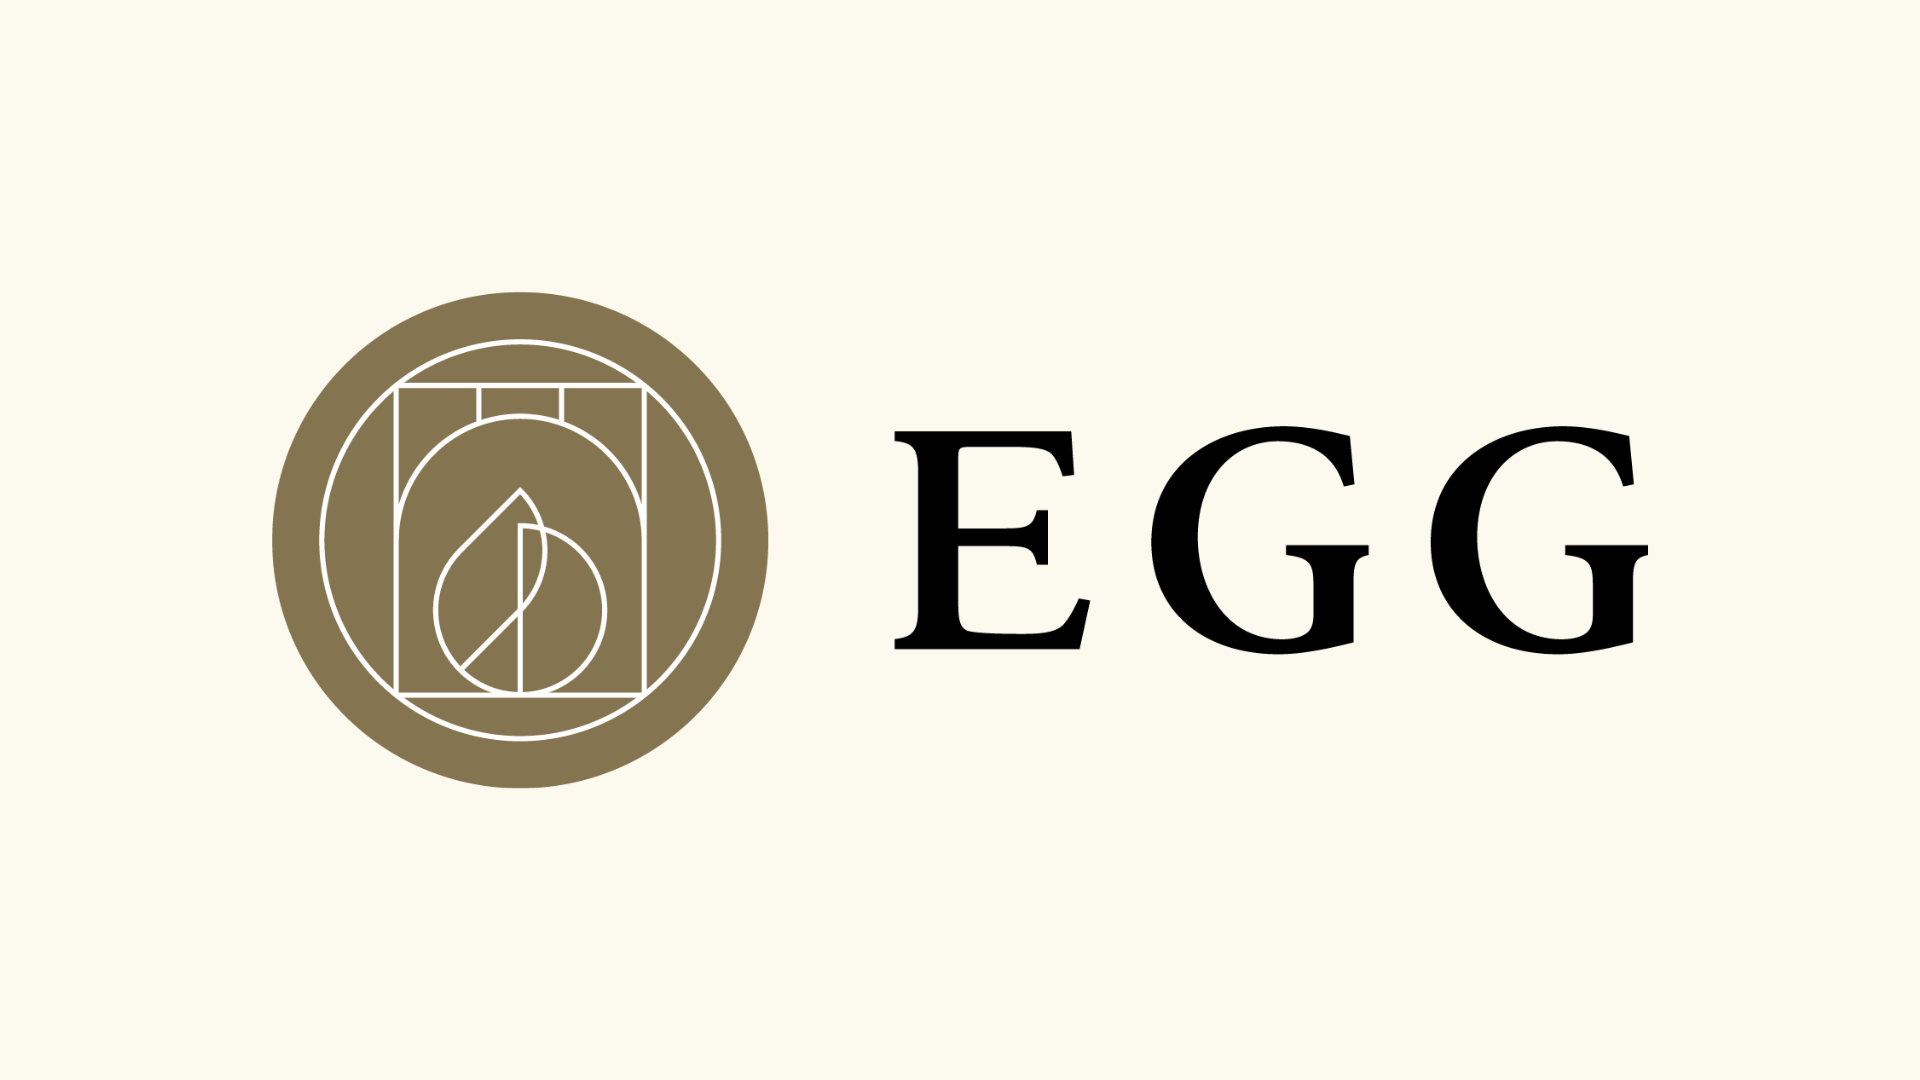 日本のイノベーションエコシステム拠点「EGG JAPAN」が 増床リニューアル・リブランディングし「EGG」として再始動